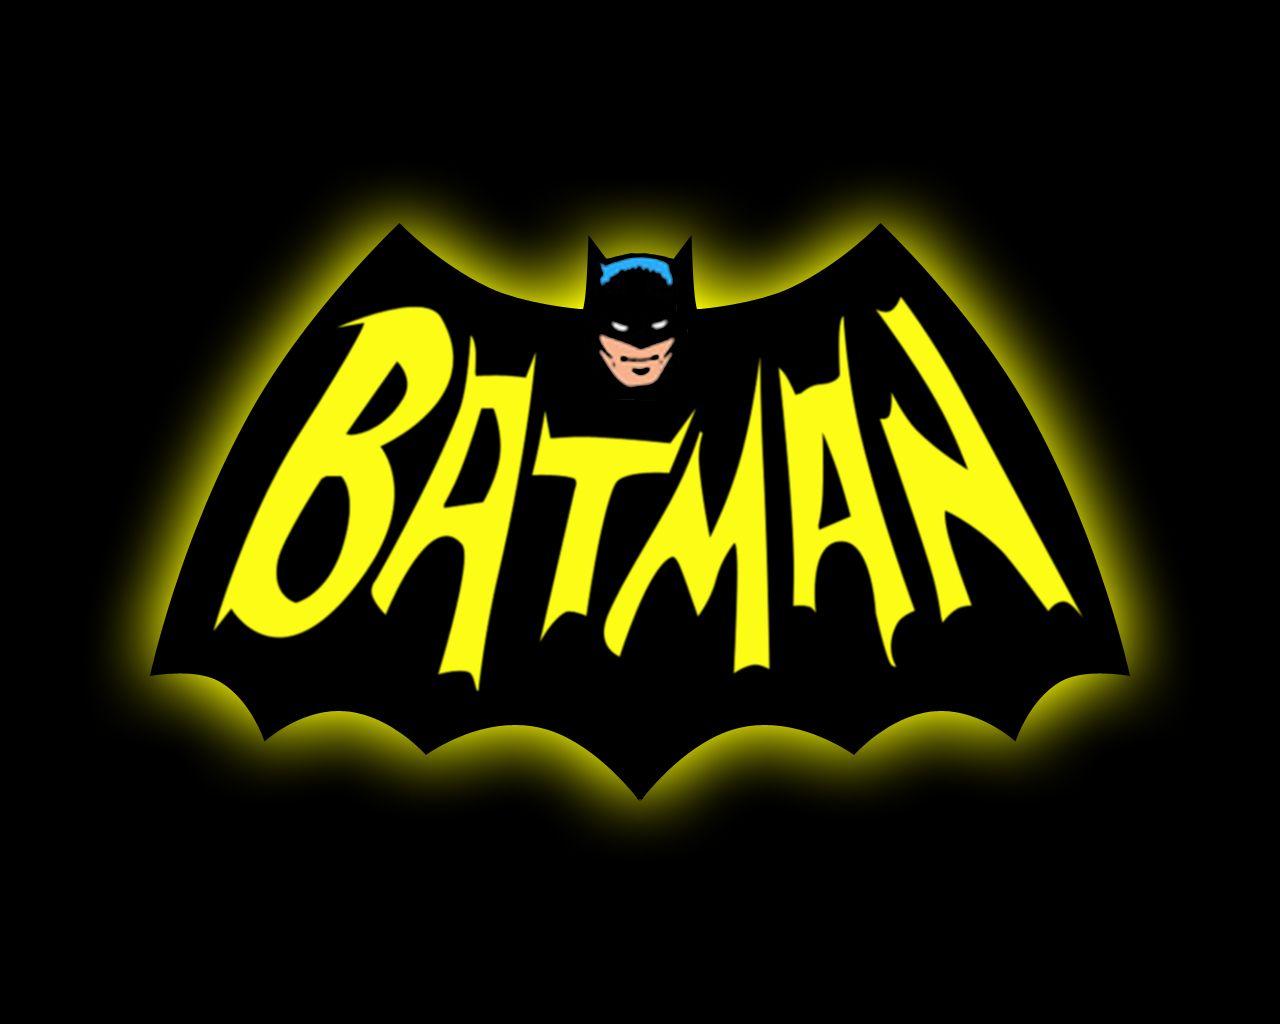 1966 Batman Wallpapers - Wallpaper Cave